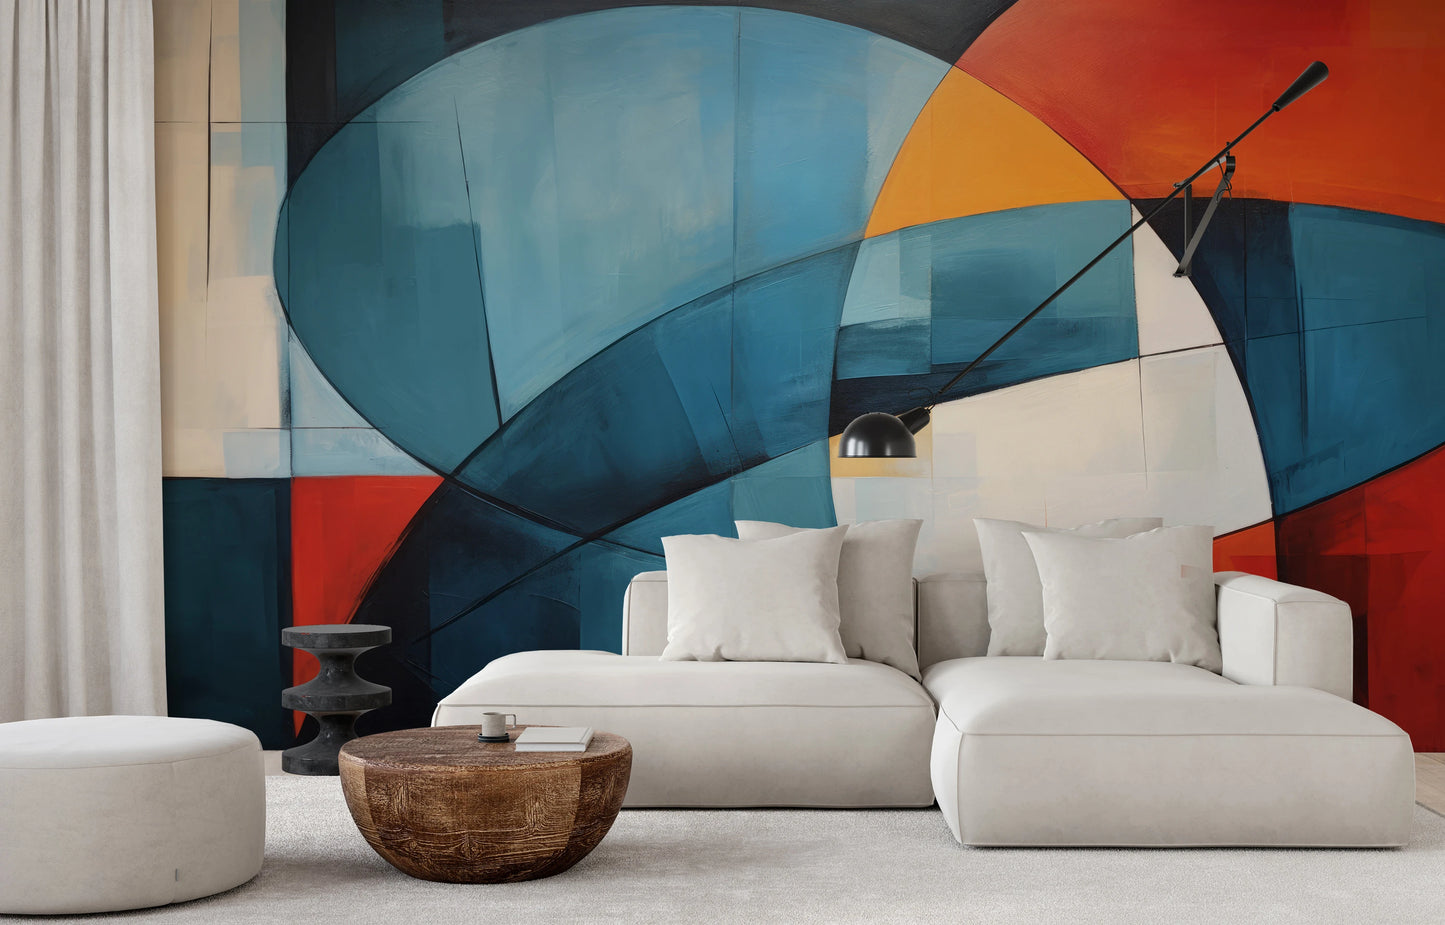 Fototapeta malowana o nazwie Colorful Abstraction pokazana w aranżacji wnętrza.